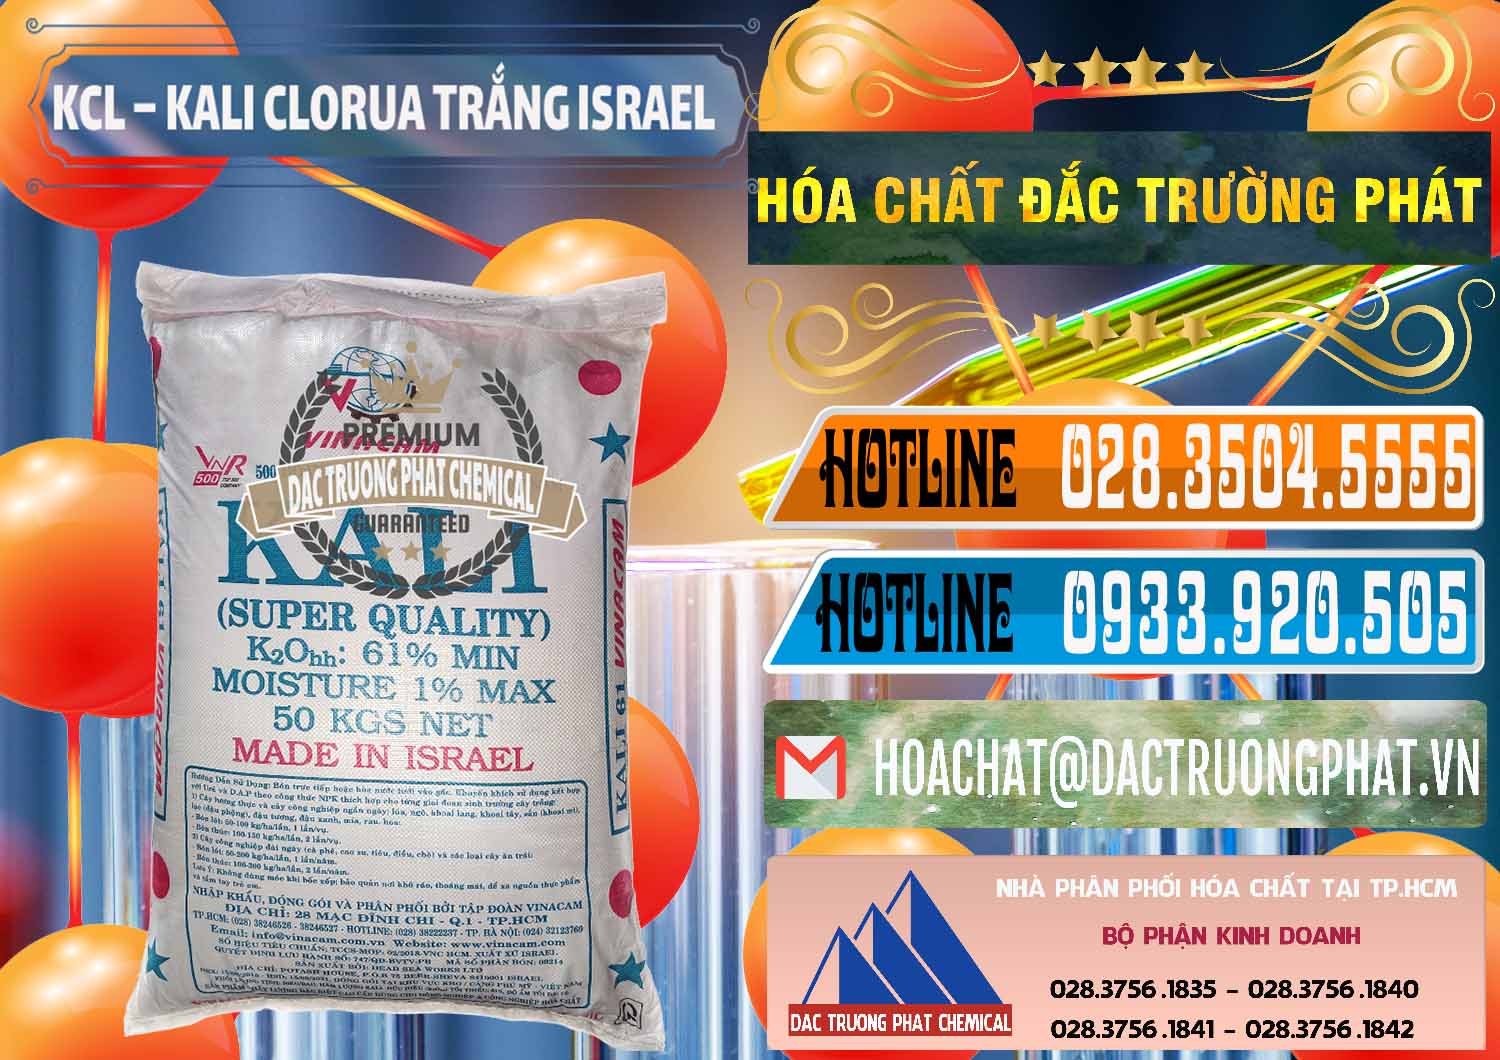 Nơi chuyên cung ứng & bán KCL – Kali Clorua Trắng Israel - 0087 - Đơn vị chuyên cung cấp ( kinh doanh ) hóa chất tại TP.HCM - stmp.net